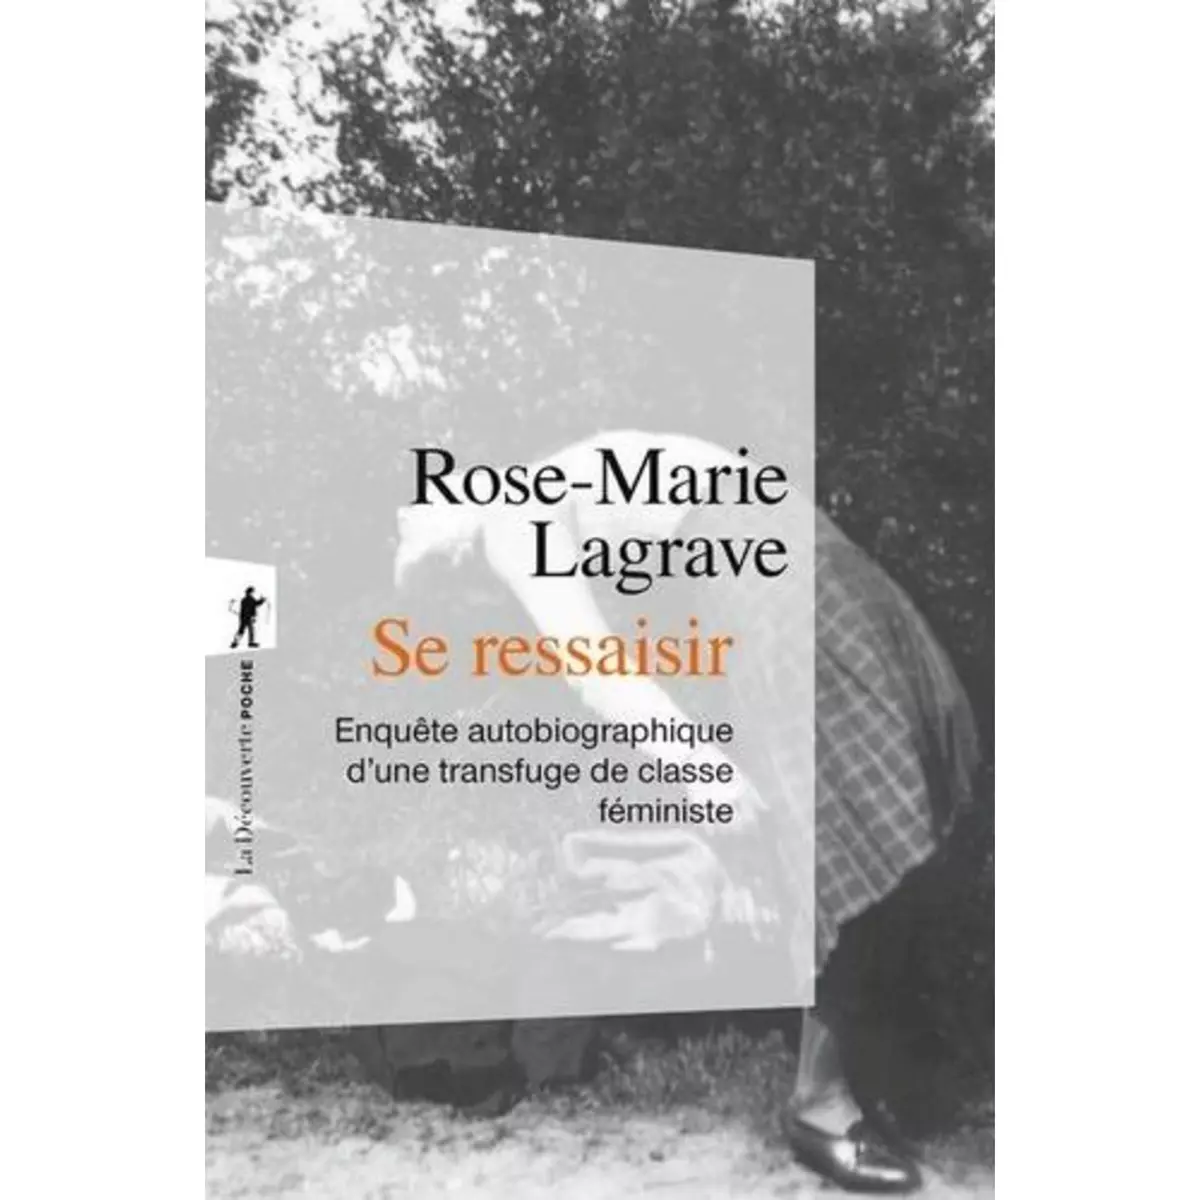  SE RESSAISIR. ENQUETE AUTOBIOGRAPHIQUE D'UNE TRANSFUGE DE CLASSE FEMINISTE, Lagrave Rose-Marie